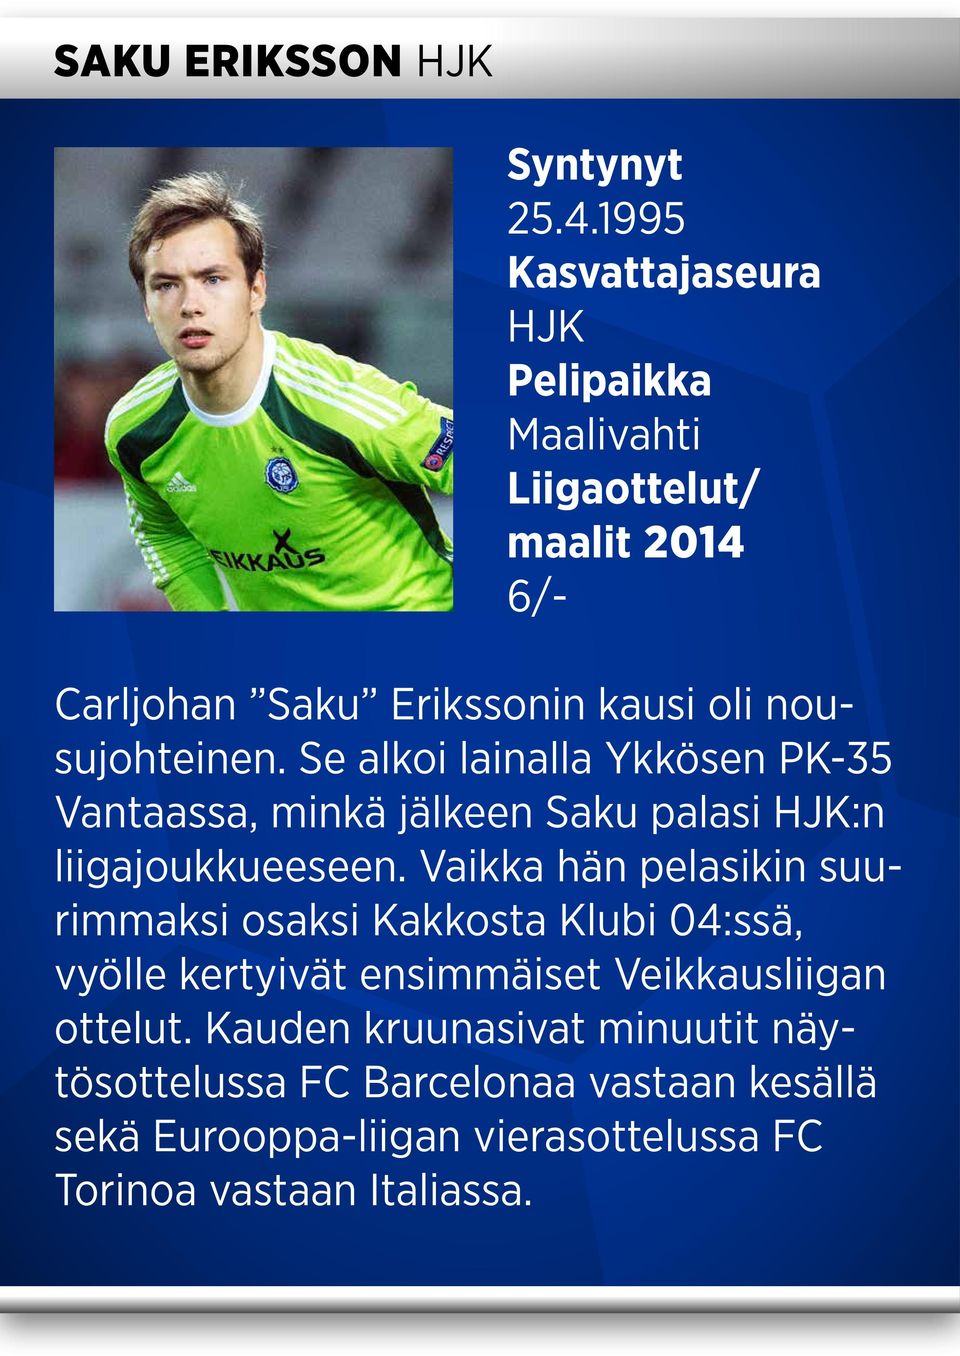 Se alkoi lainalla Ykkösen PK-35 Vantaassa, minkä jälkeen Saku palasi HJK:n liigajoukkueeseen.